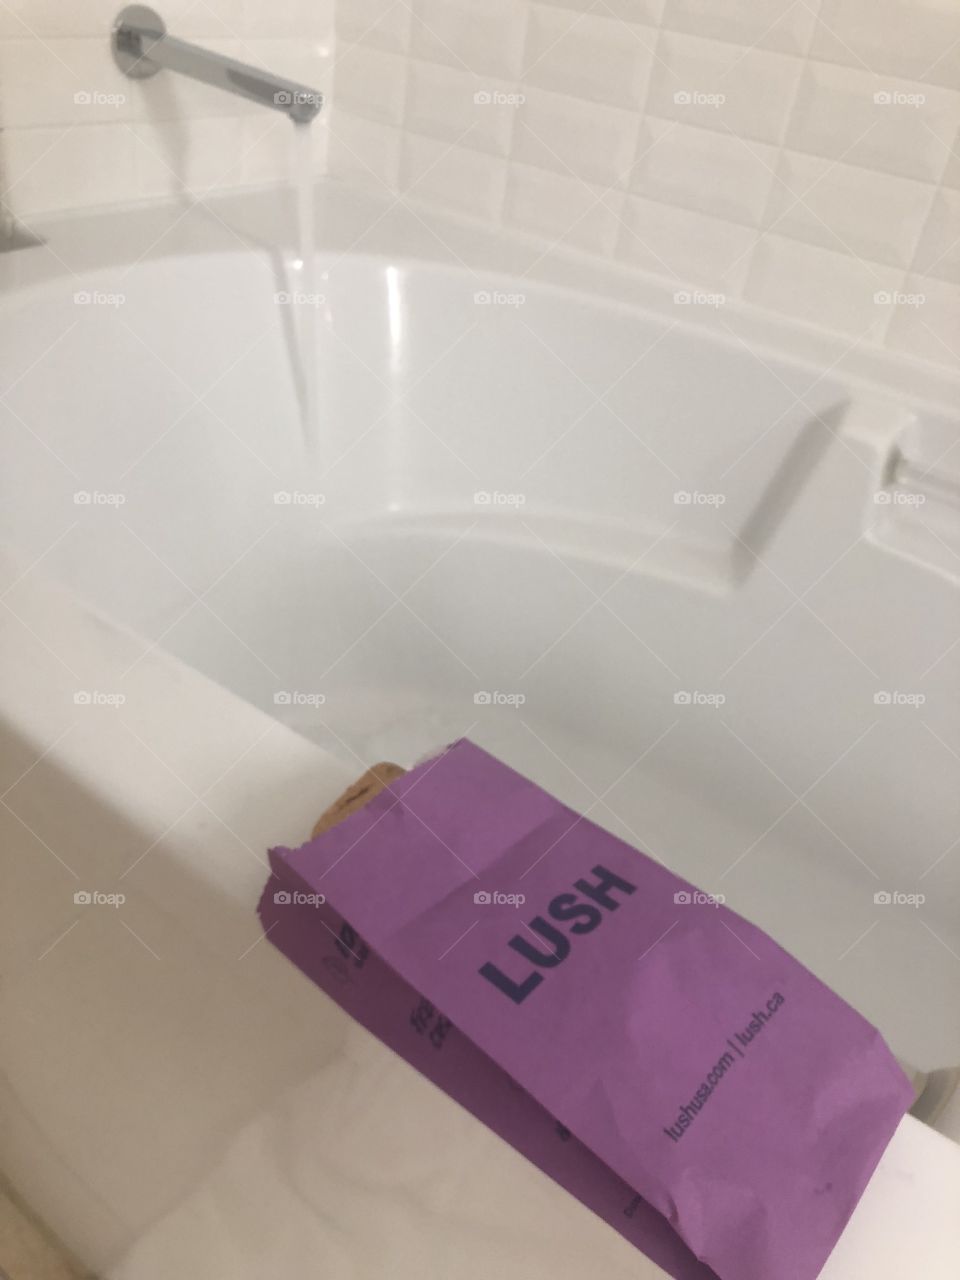 LUSH bath bombs 